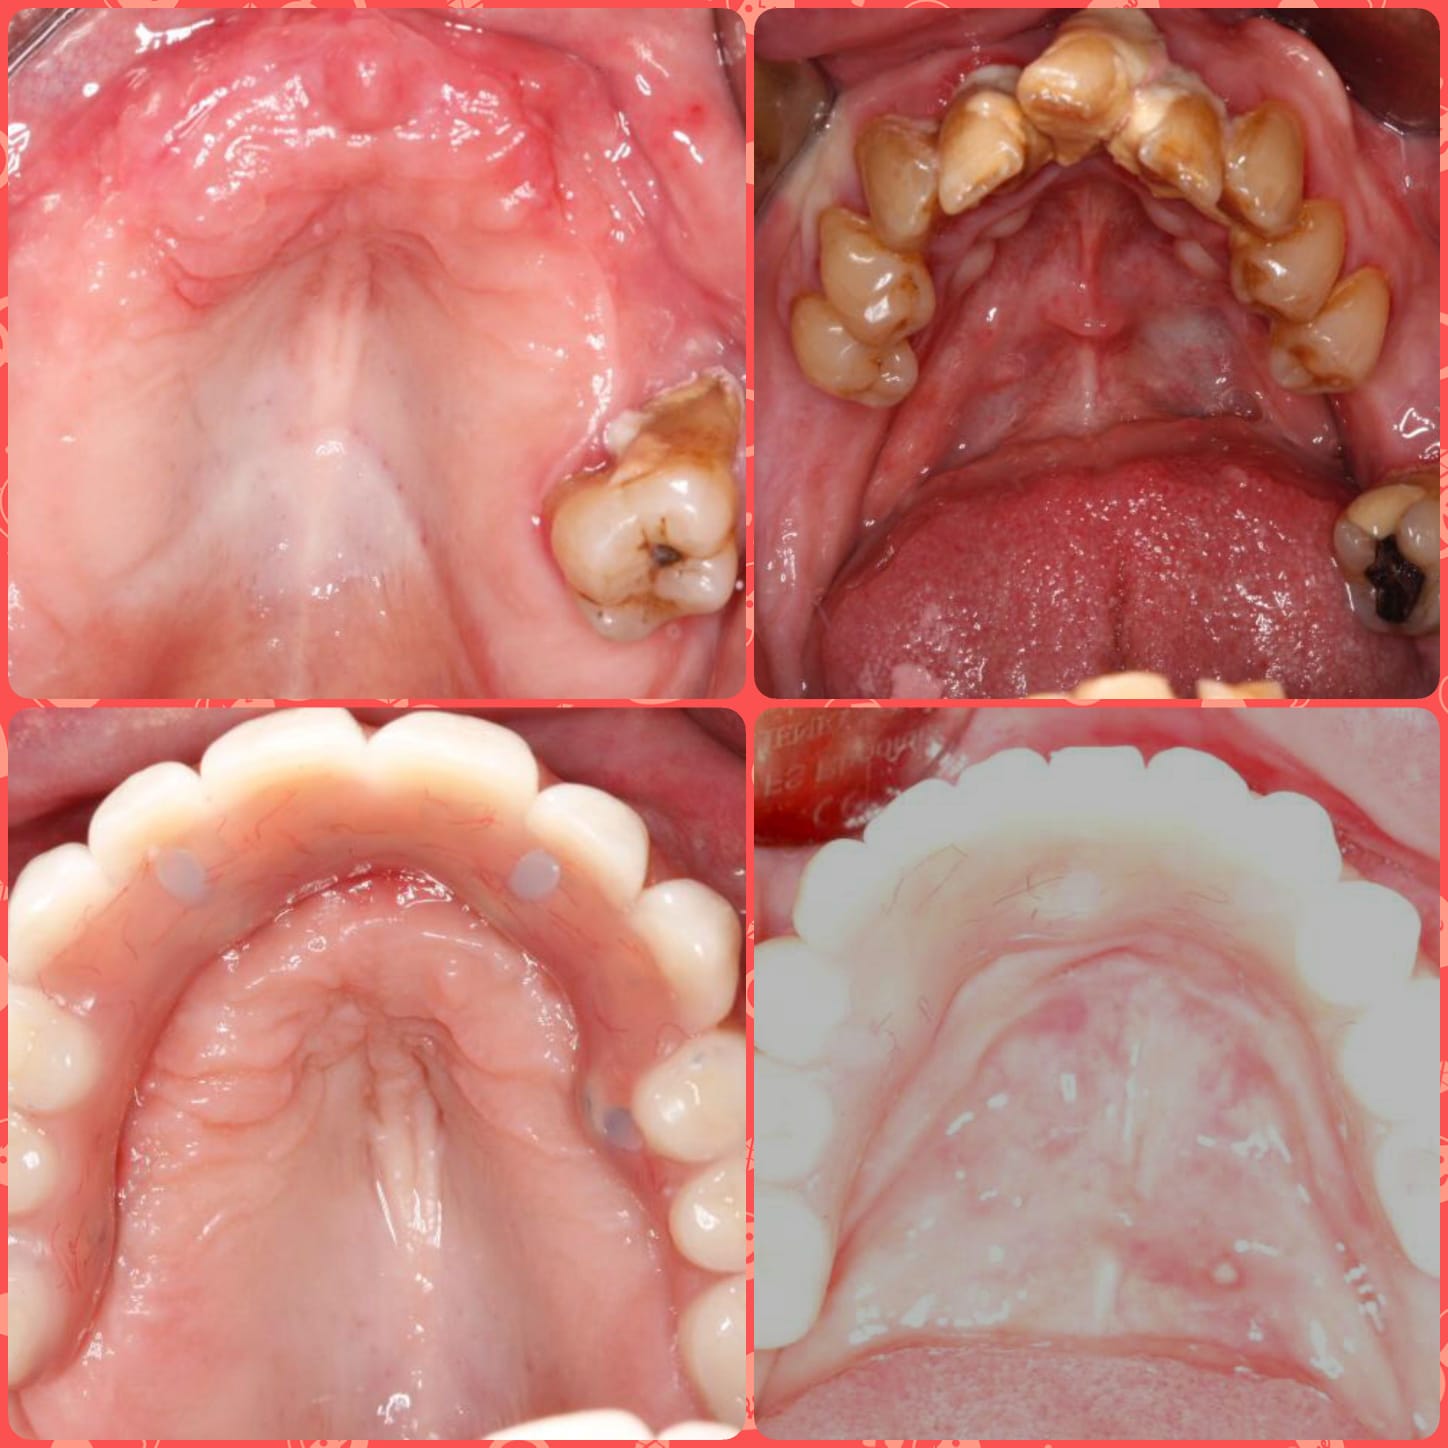 Dental Images